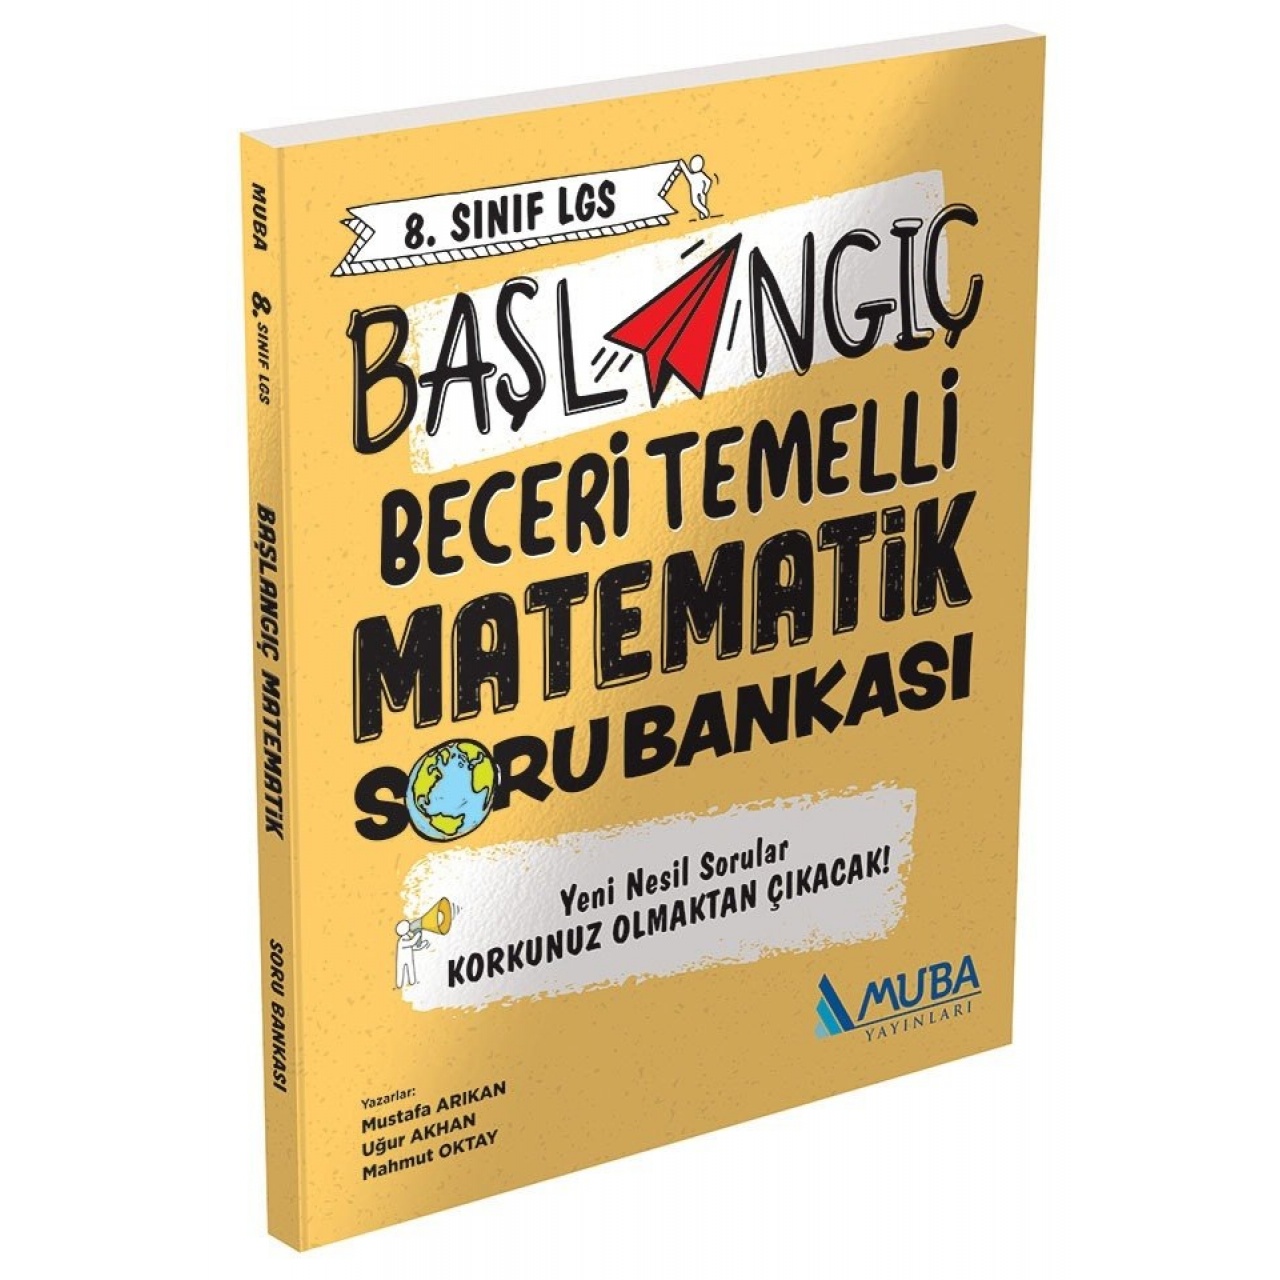 8. Sınıf LGS Başlangıç Beceri Temelli Matematik Soru Bankası Muba Yayınları